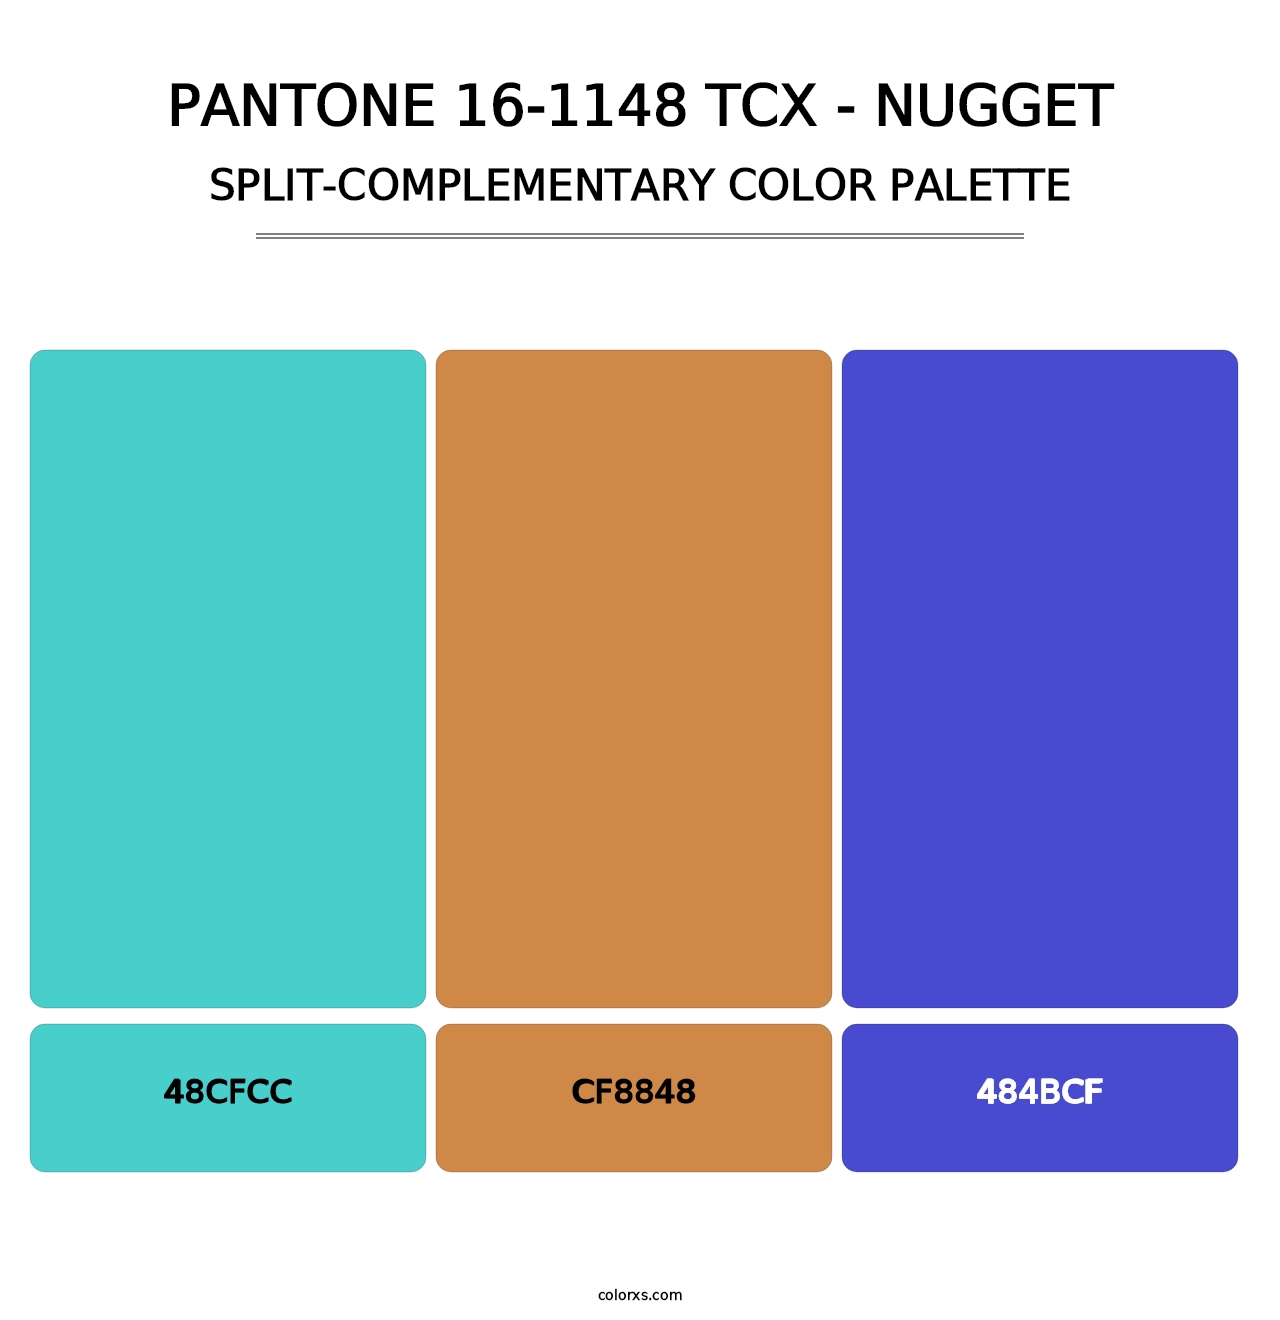 PANTONE 16-1148 TCX - Nugget - Split-Complementary Color Palette